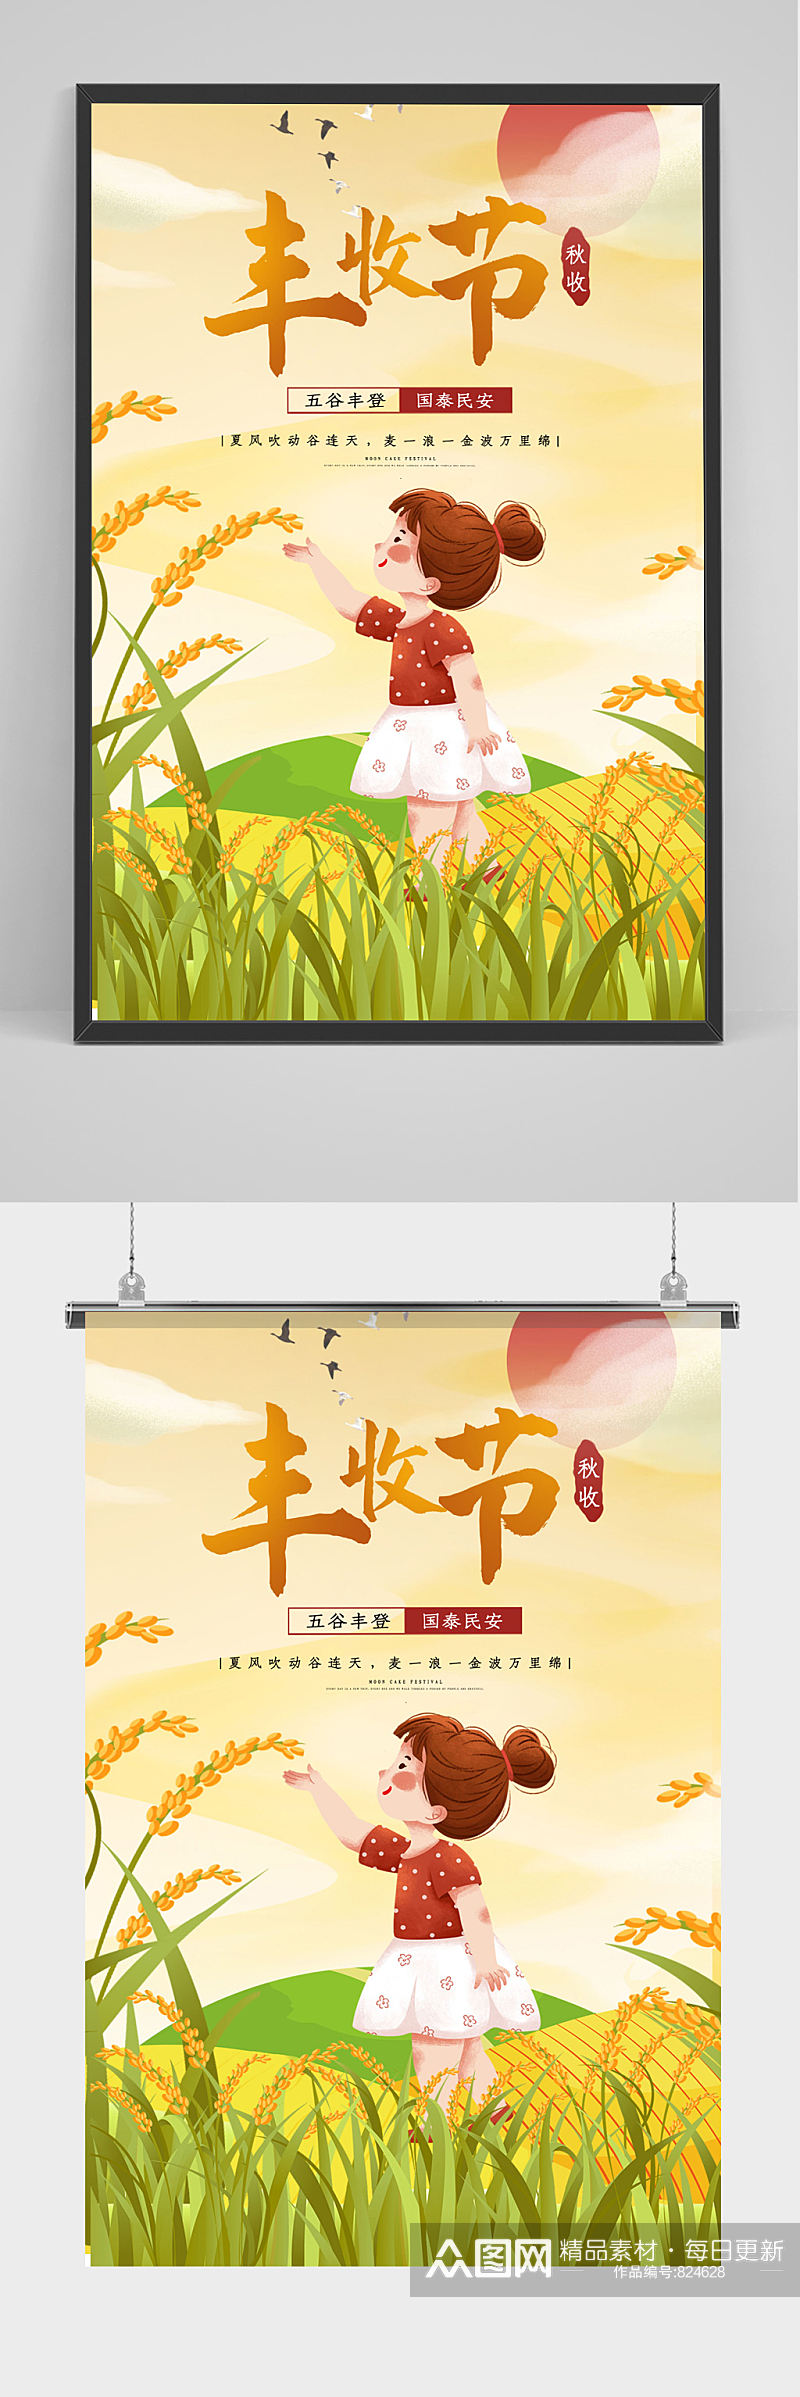 时尚中国农民丰收节秋季收割印刷海报素材